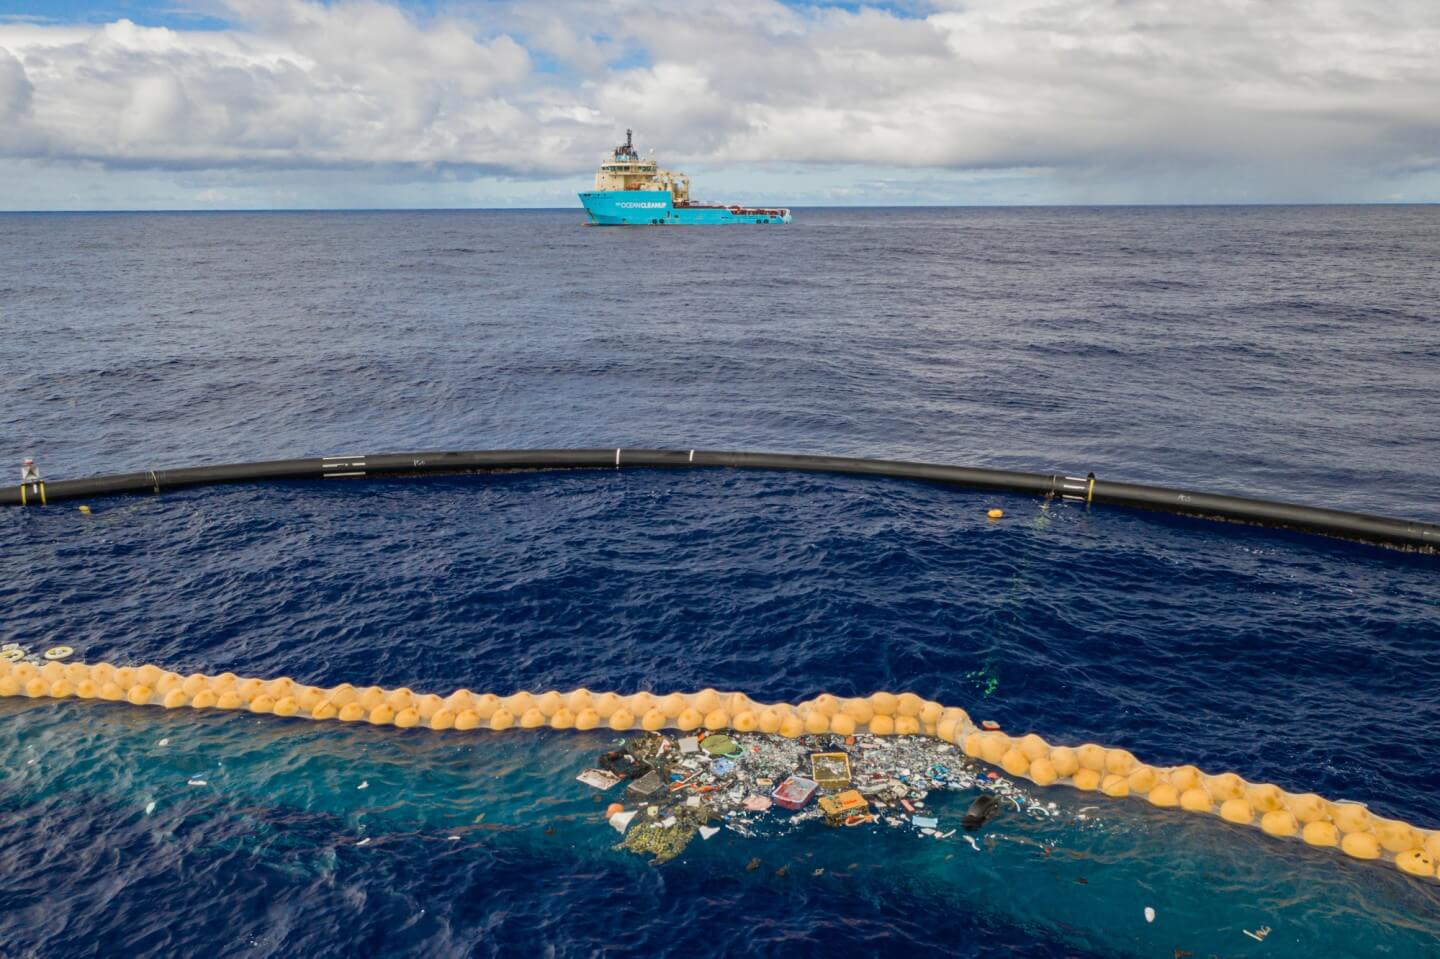 Un ambitieux projet de nettoyage des océans de plastique муосора a repris ses travaux